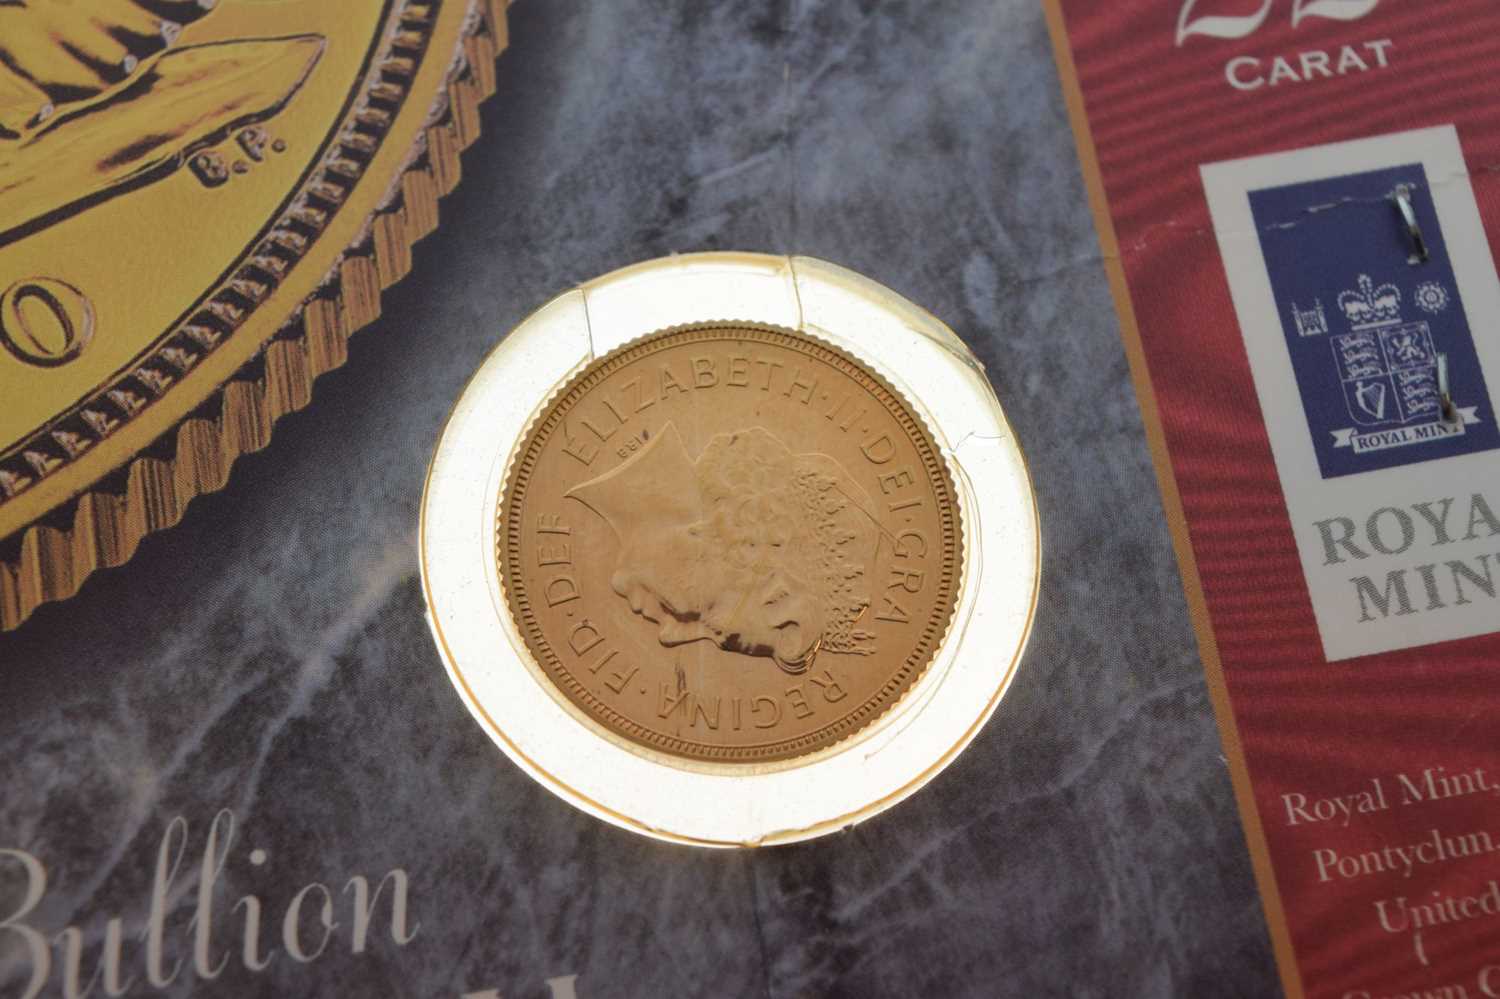 Royal Mint Elizabeth II 2000 gold sovereign in presentation pack - Image 2 of 4